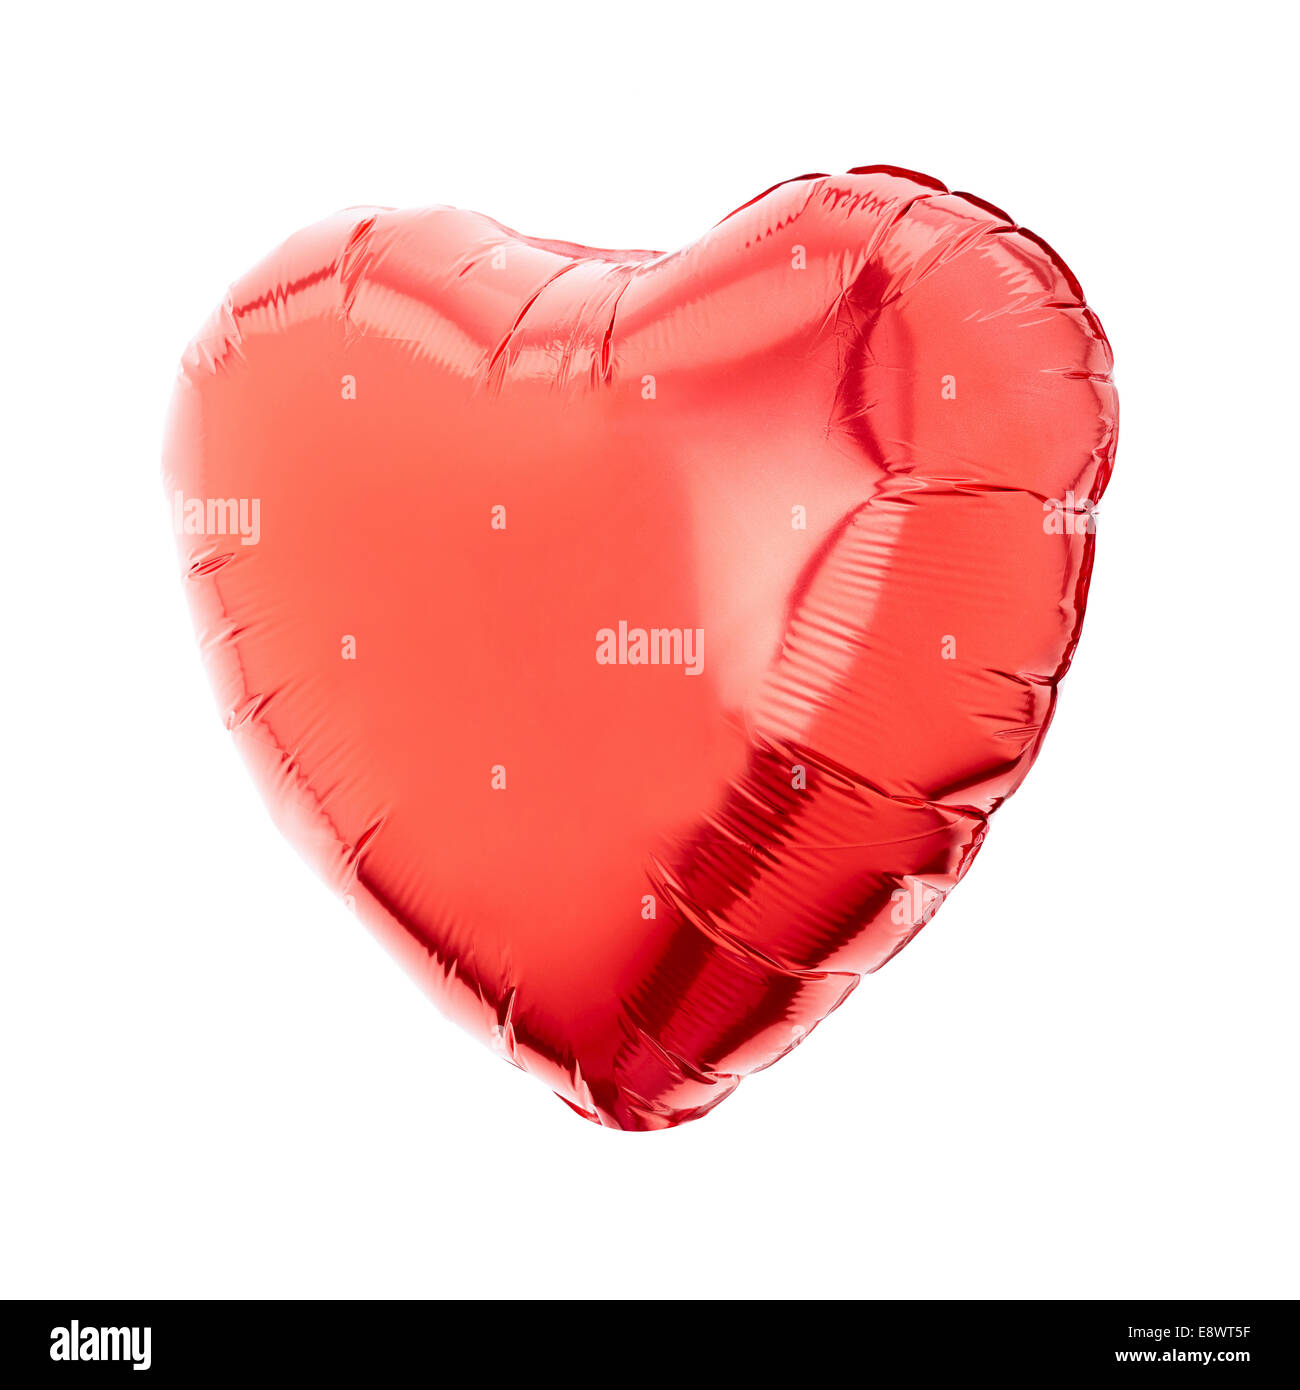 Red heart balloon Stock Photo